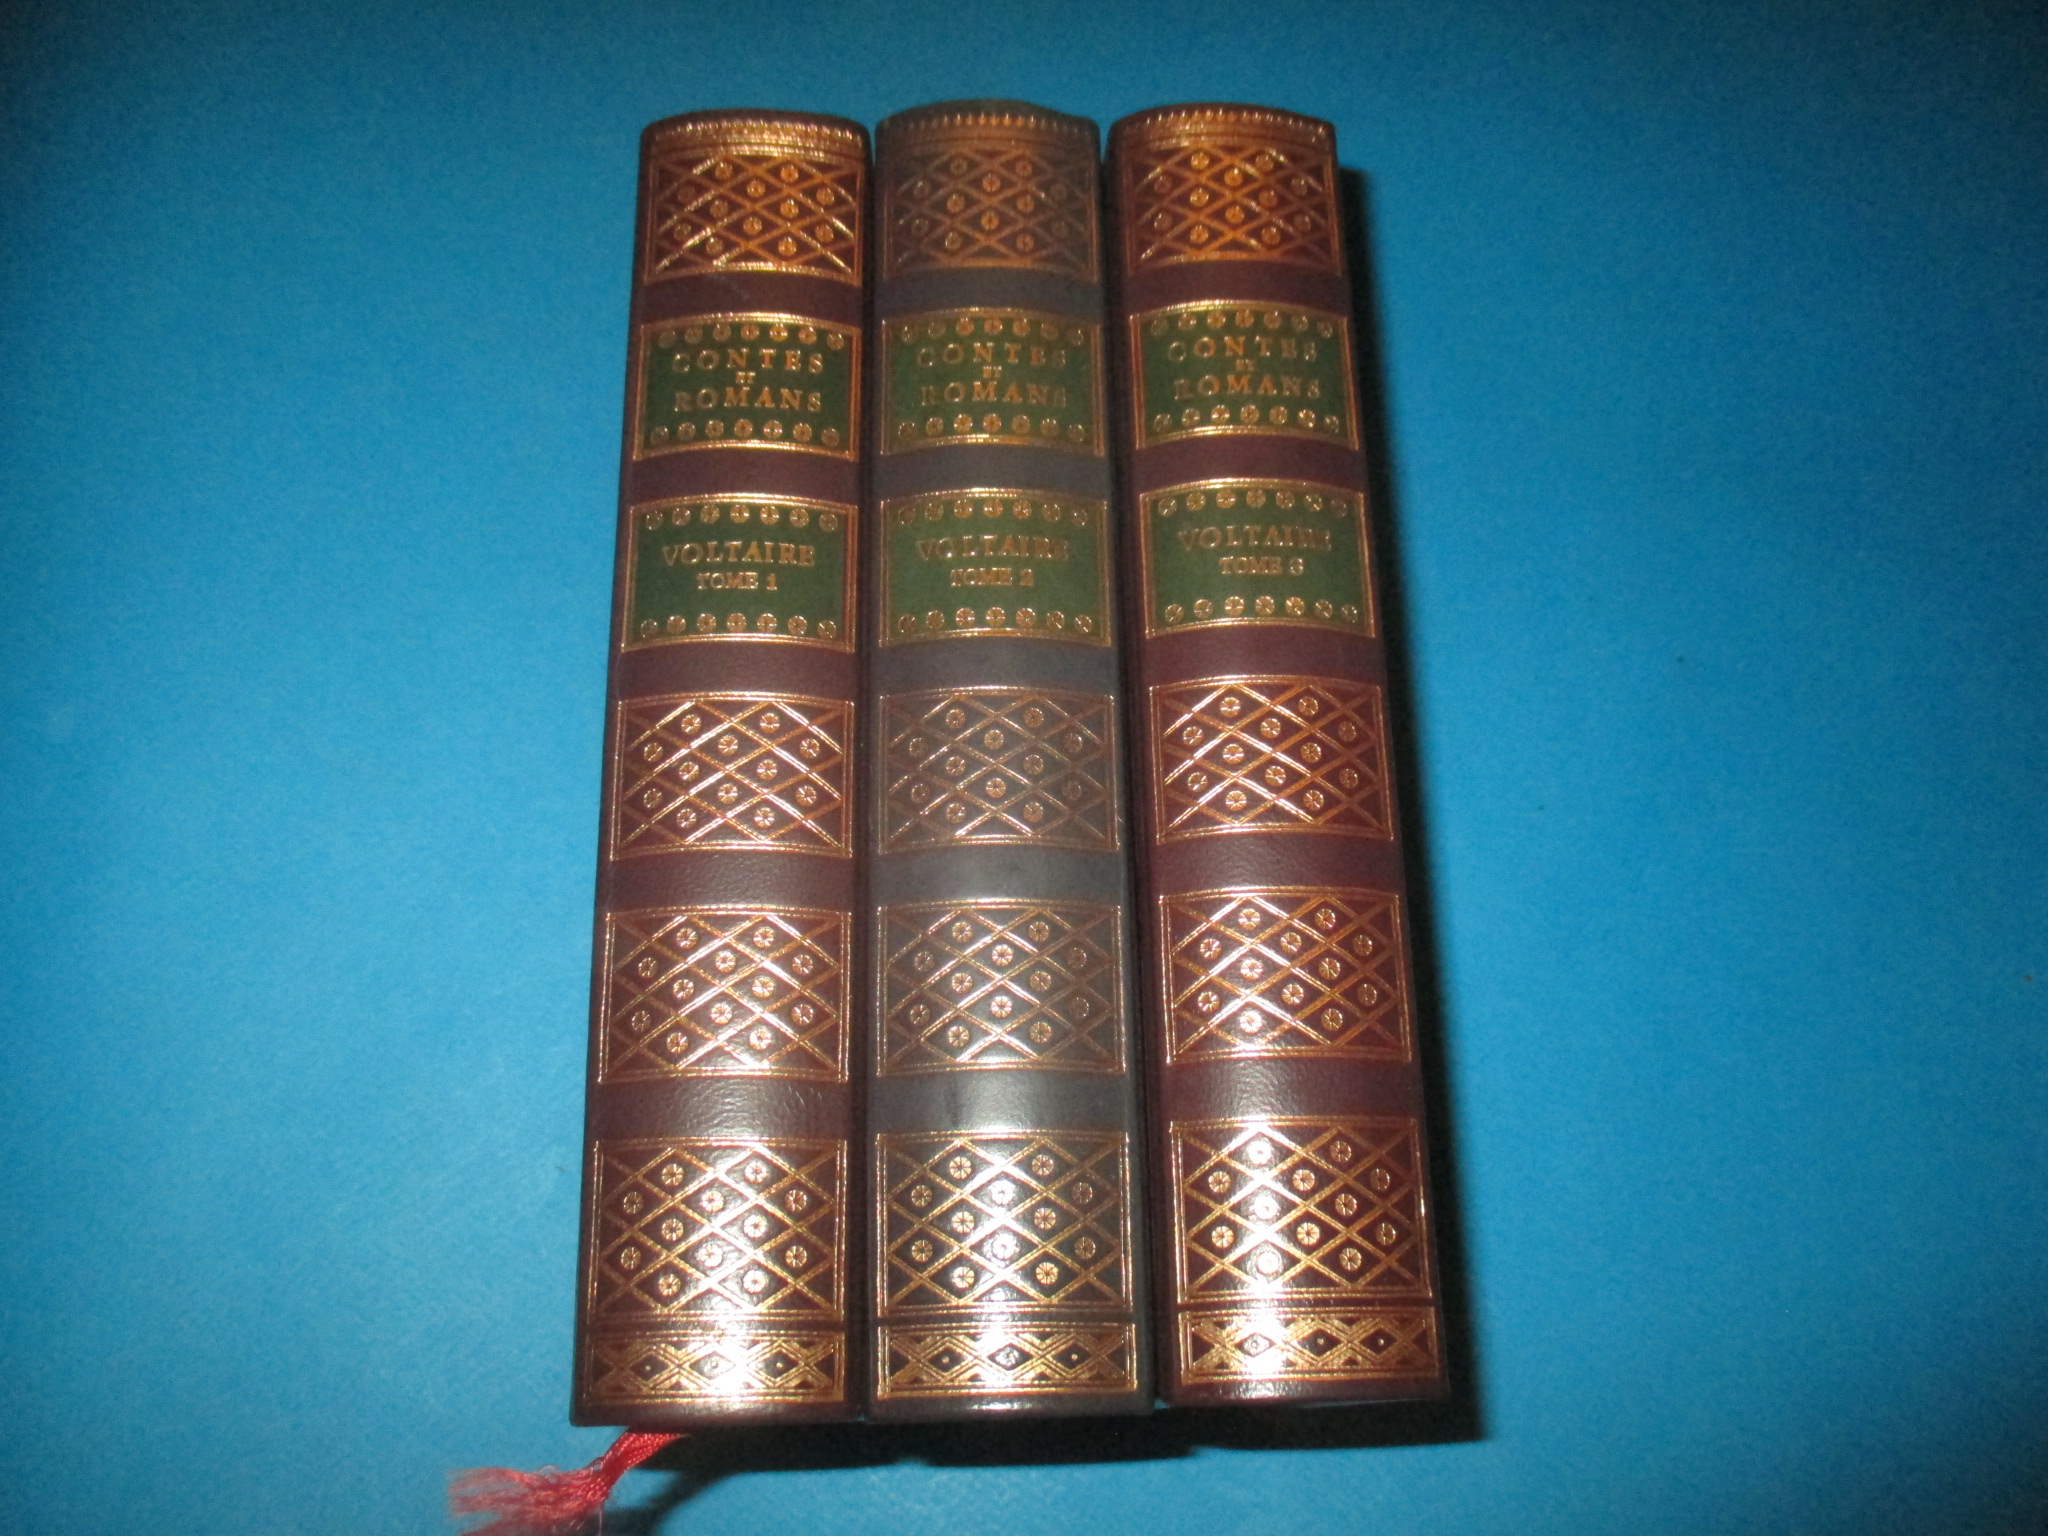 Contes et Romans en 3 volumes, Voltaire, tomes 1 à 3, Jean de Bonnot 1981